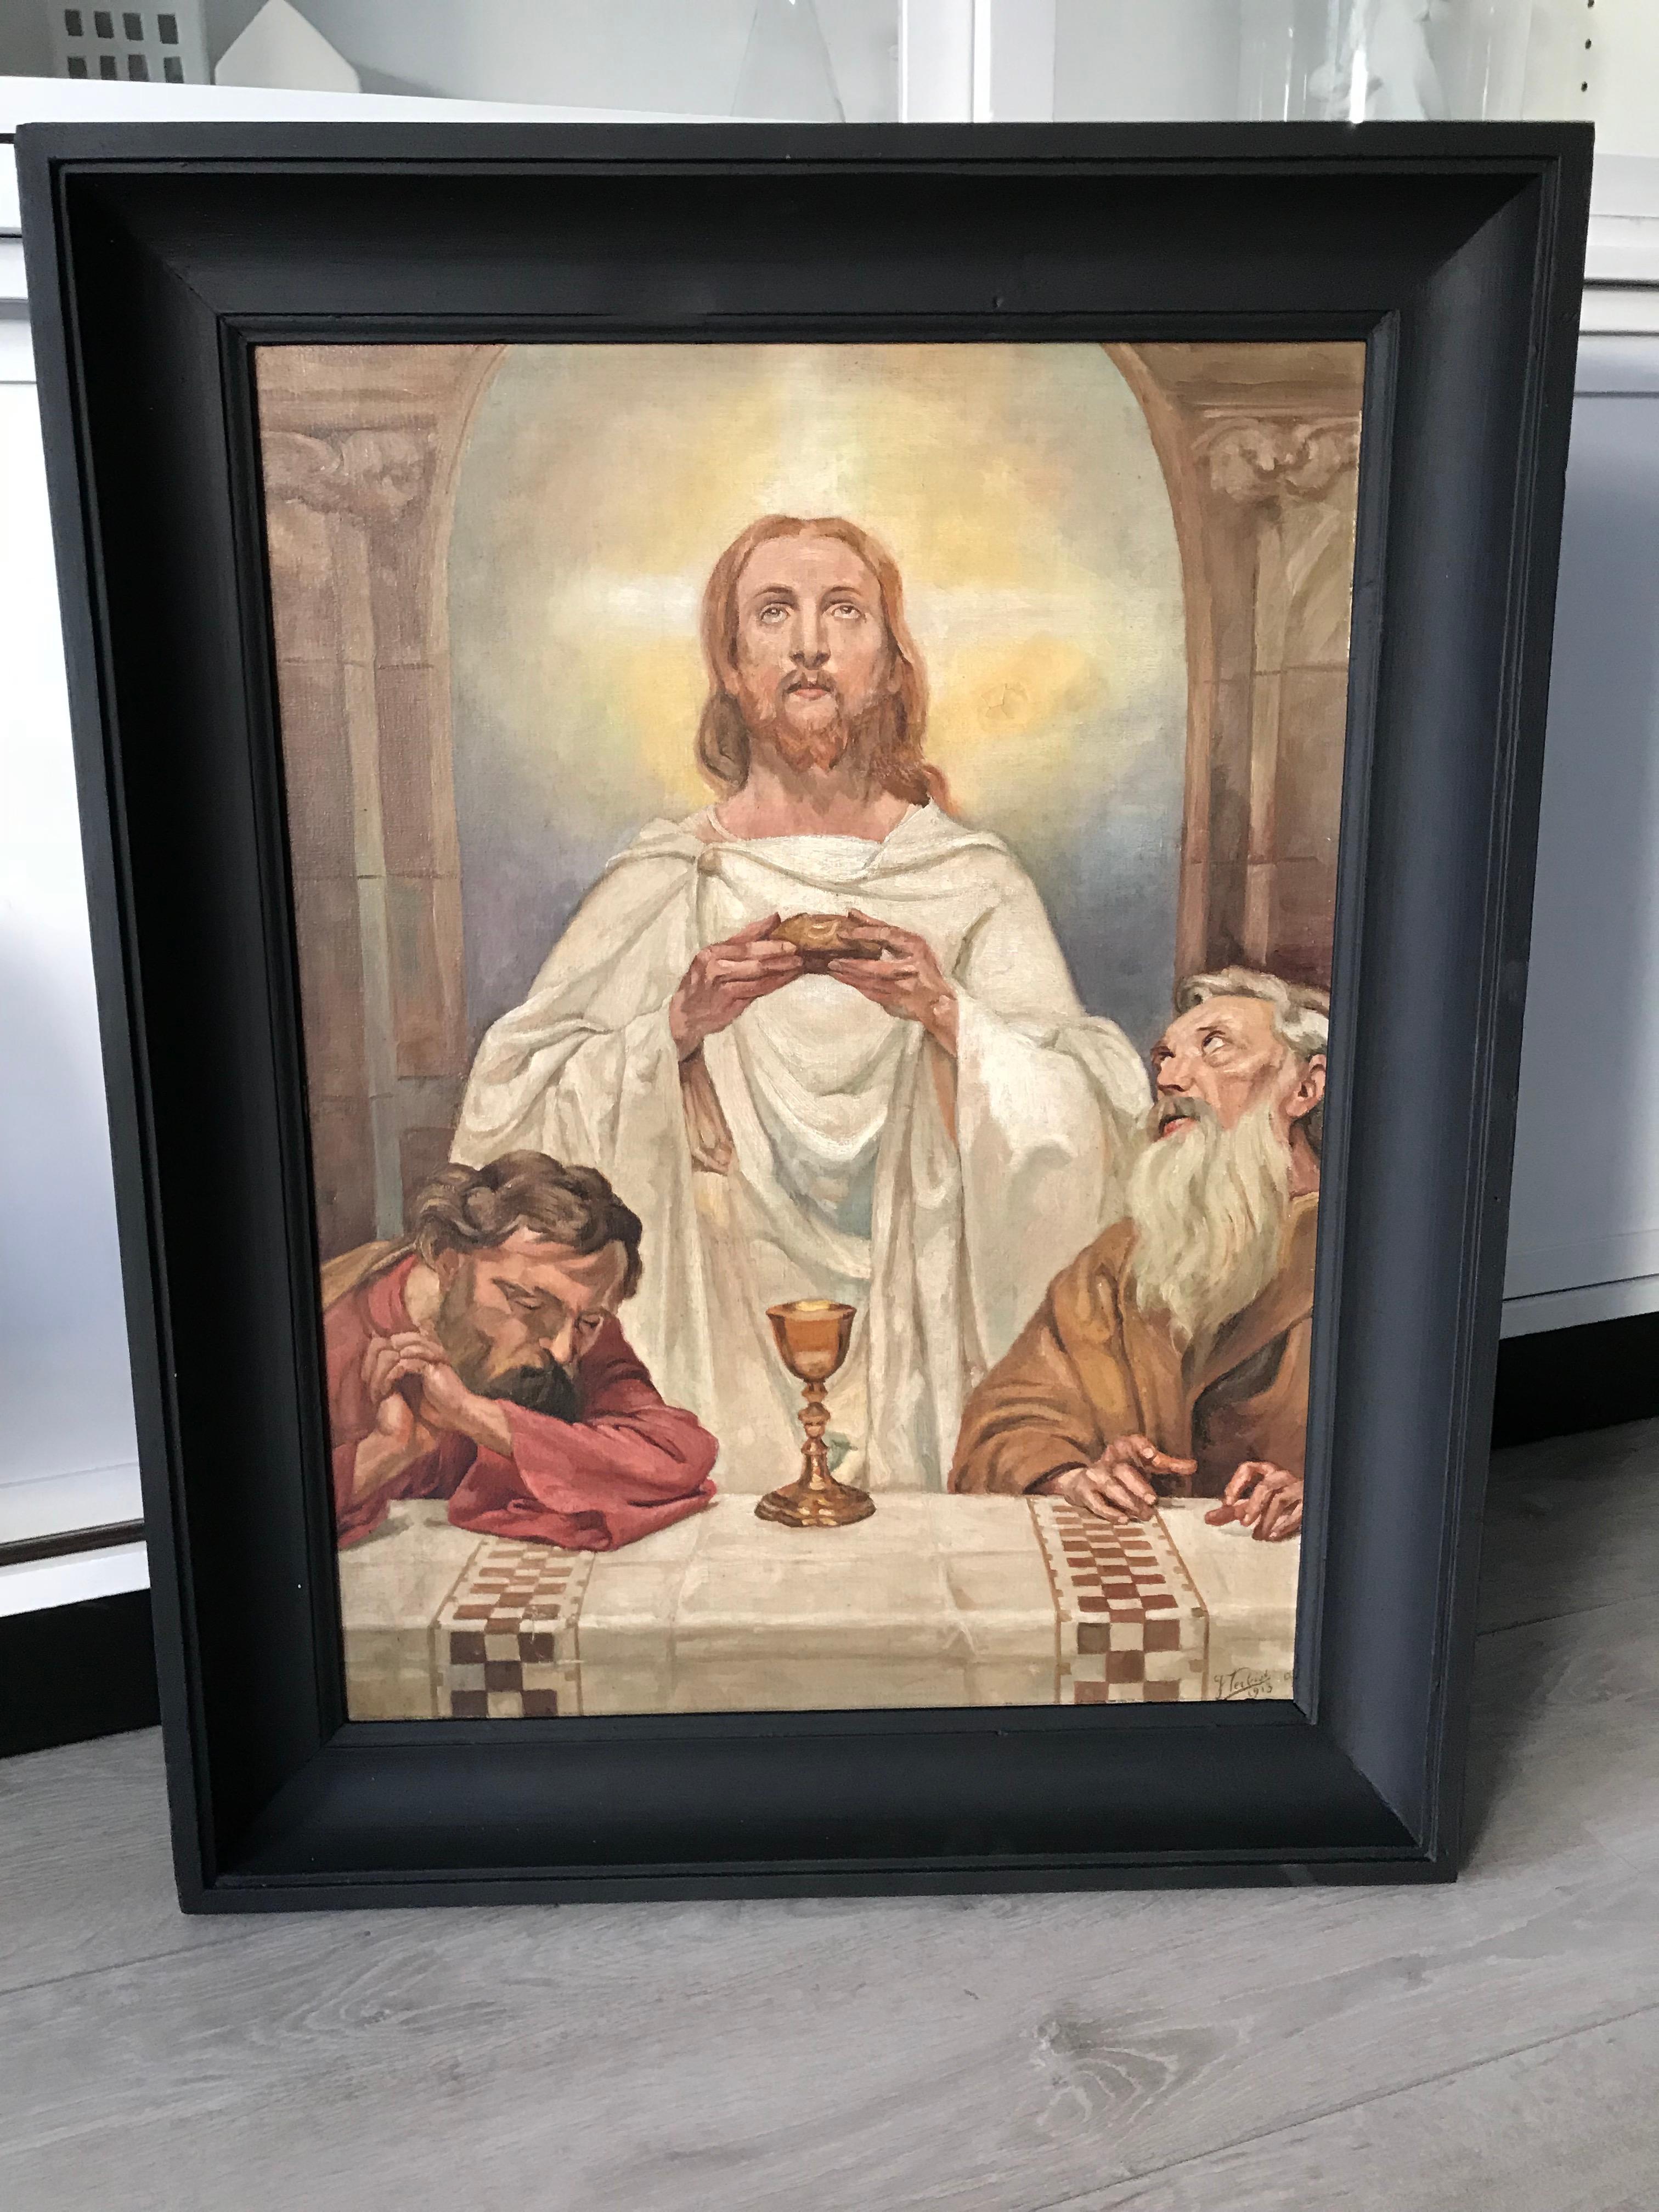 Œuvre d'art religieuse, significative et de taille parfaite.

Nous trouvons rafraîchissant de voir le Christ dans cette peinture à l'huile originale de 1913 comme le maître spirituel qu'il était (dans un acte cérémoniel) et non souffrant. Ces autres